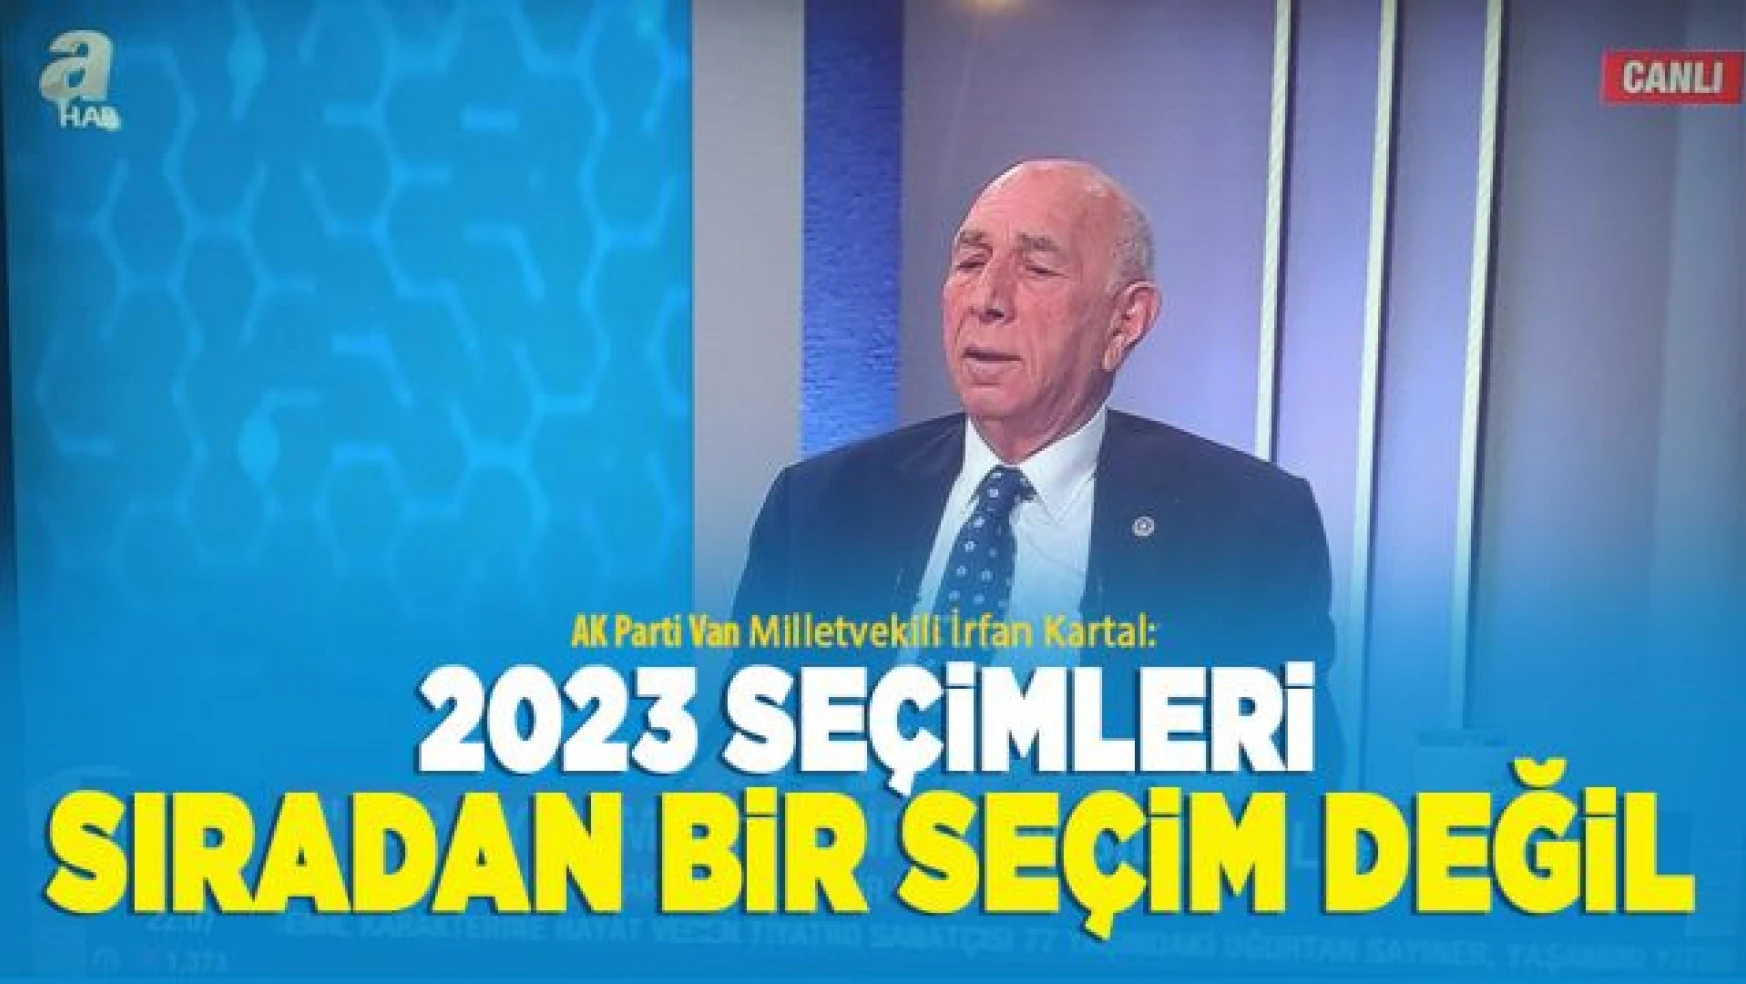 Van Milletvekili İrfan Kartal, '2023 seçimleri sıradan bir seçim değil!'